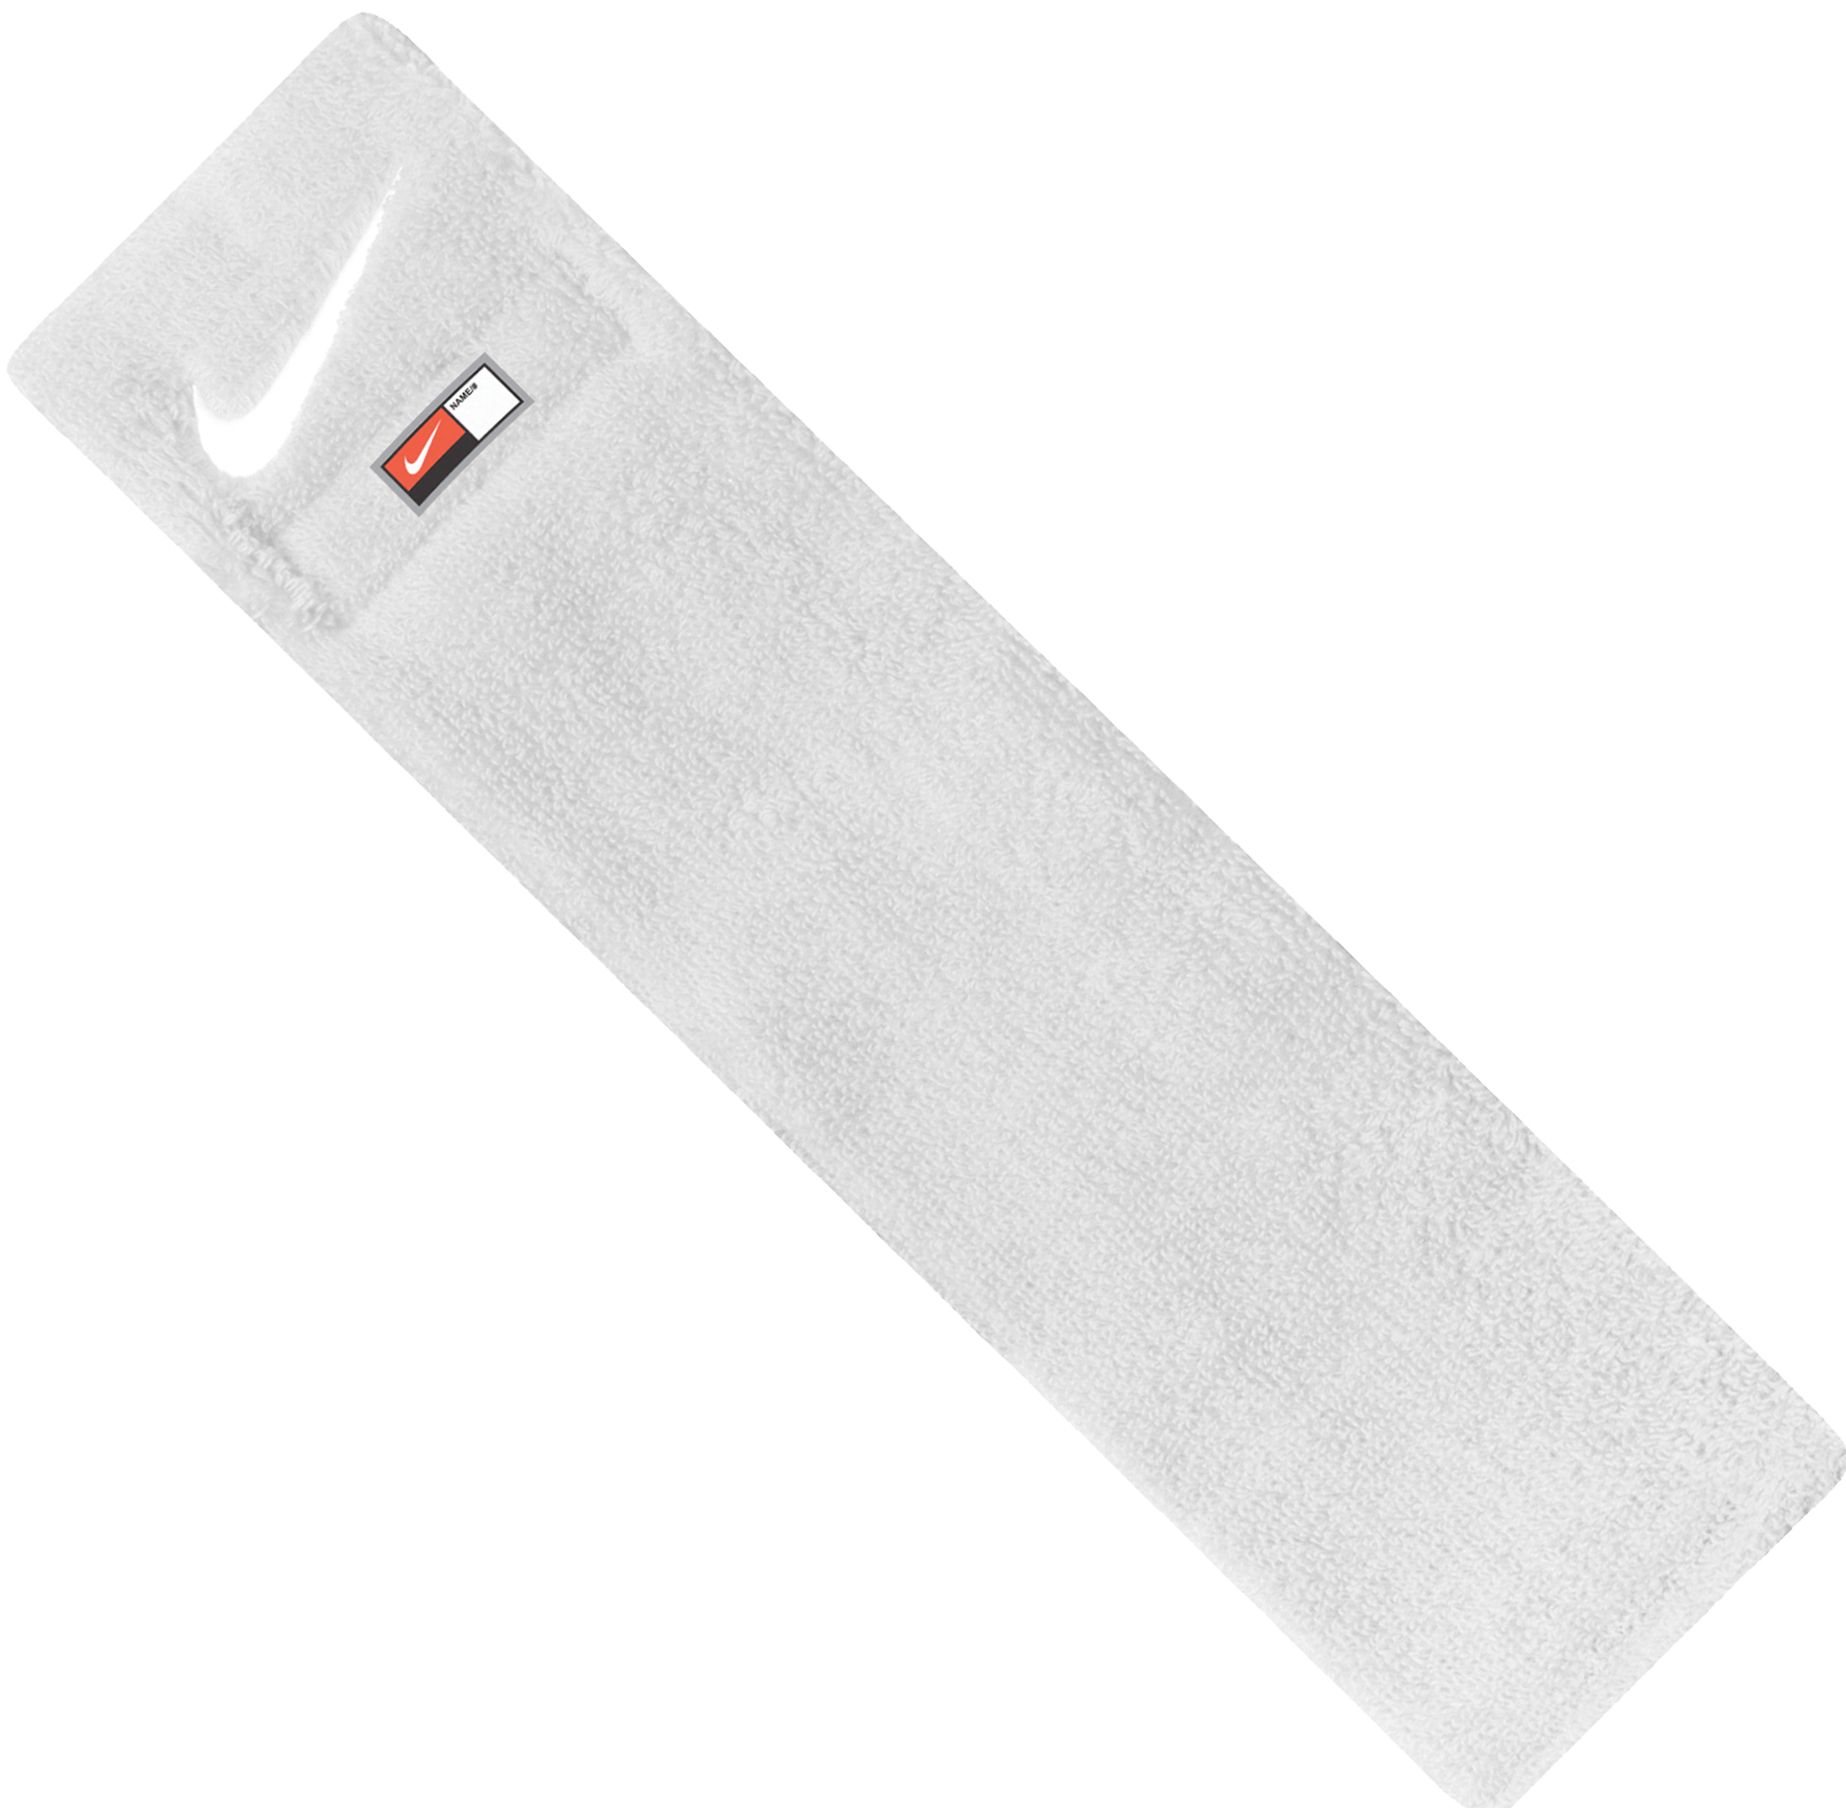 white nike towel